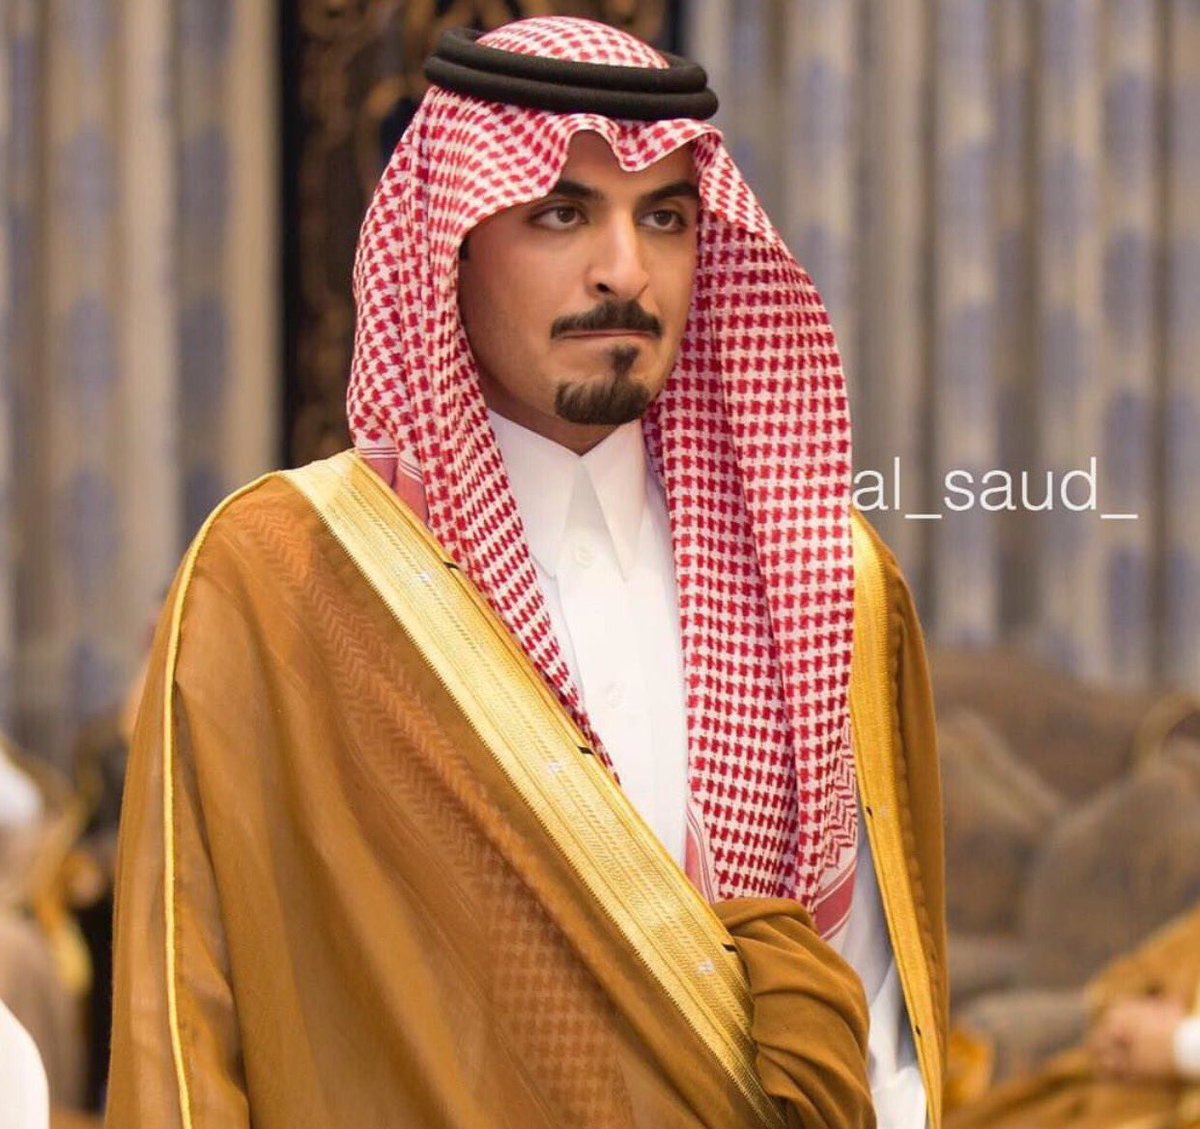 جريدة الرياض الأمير نايف بن سلطان يحتفل بزواجه من كريمة الأمير سعود بن نايف